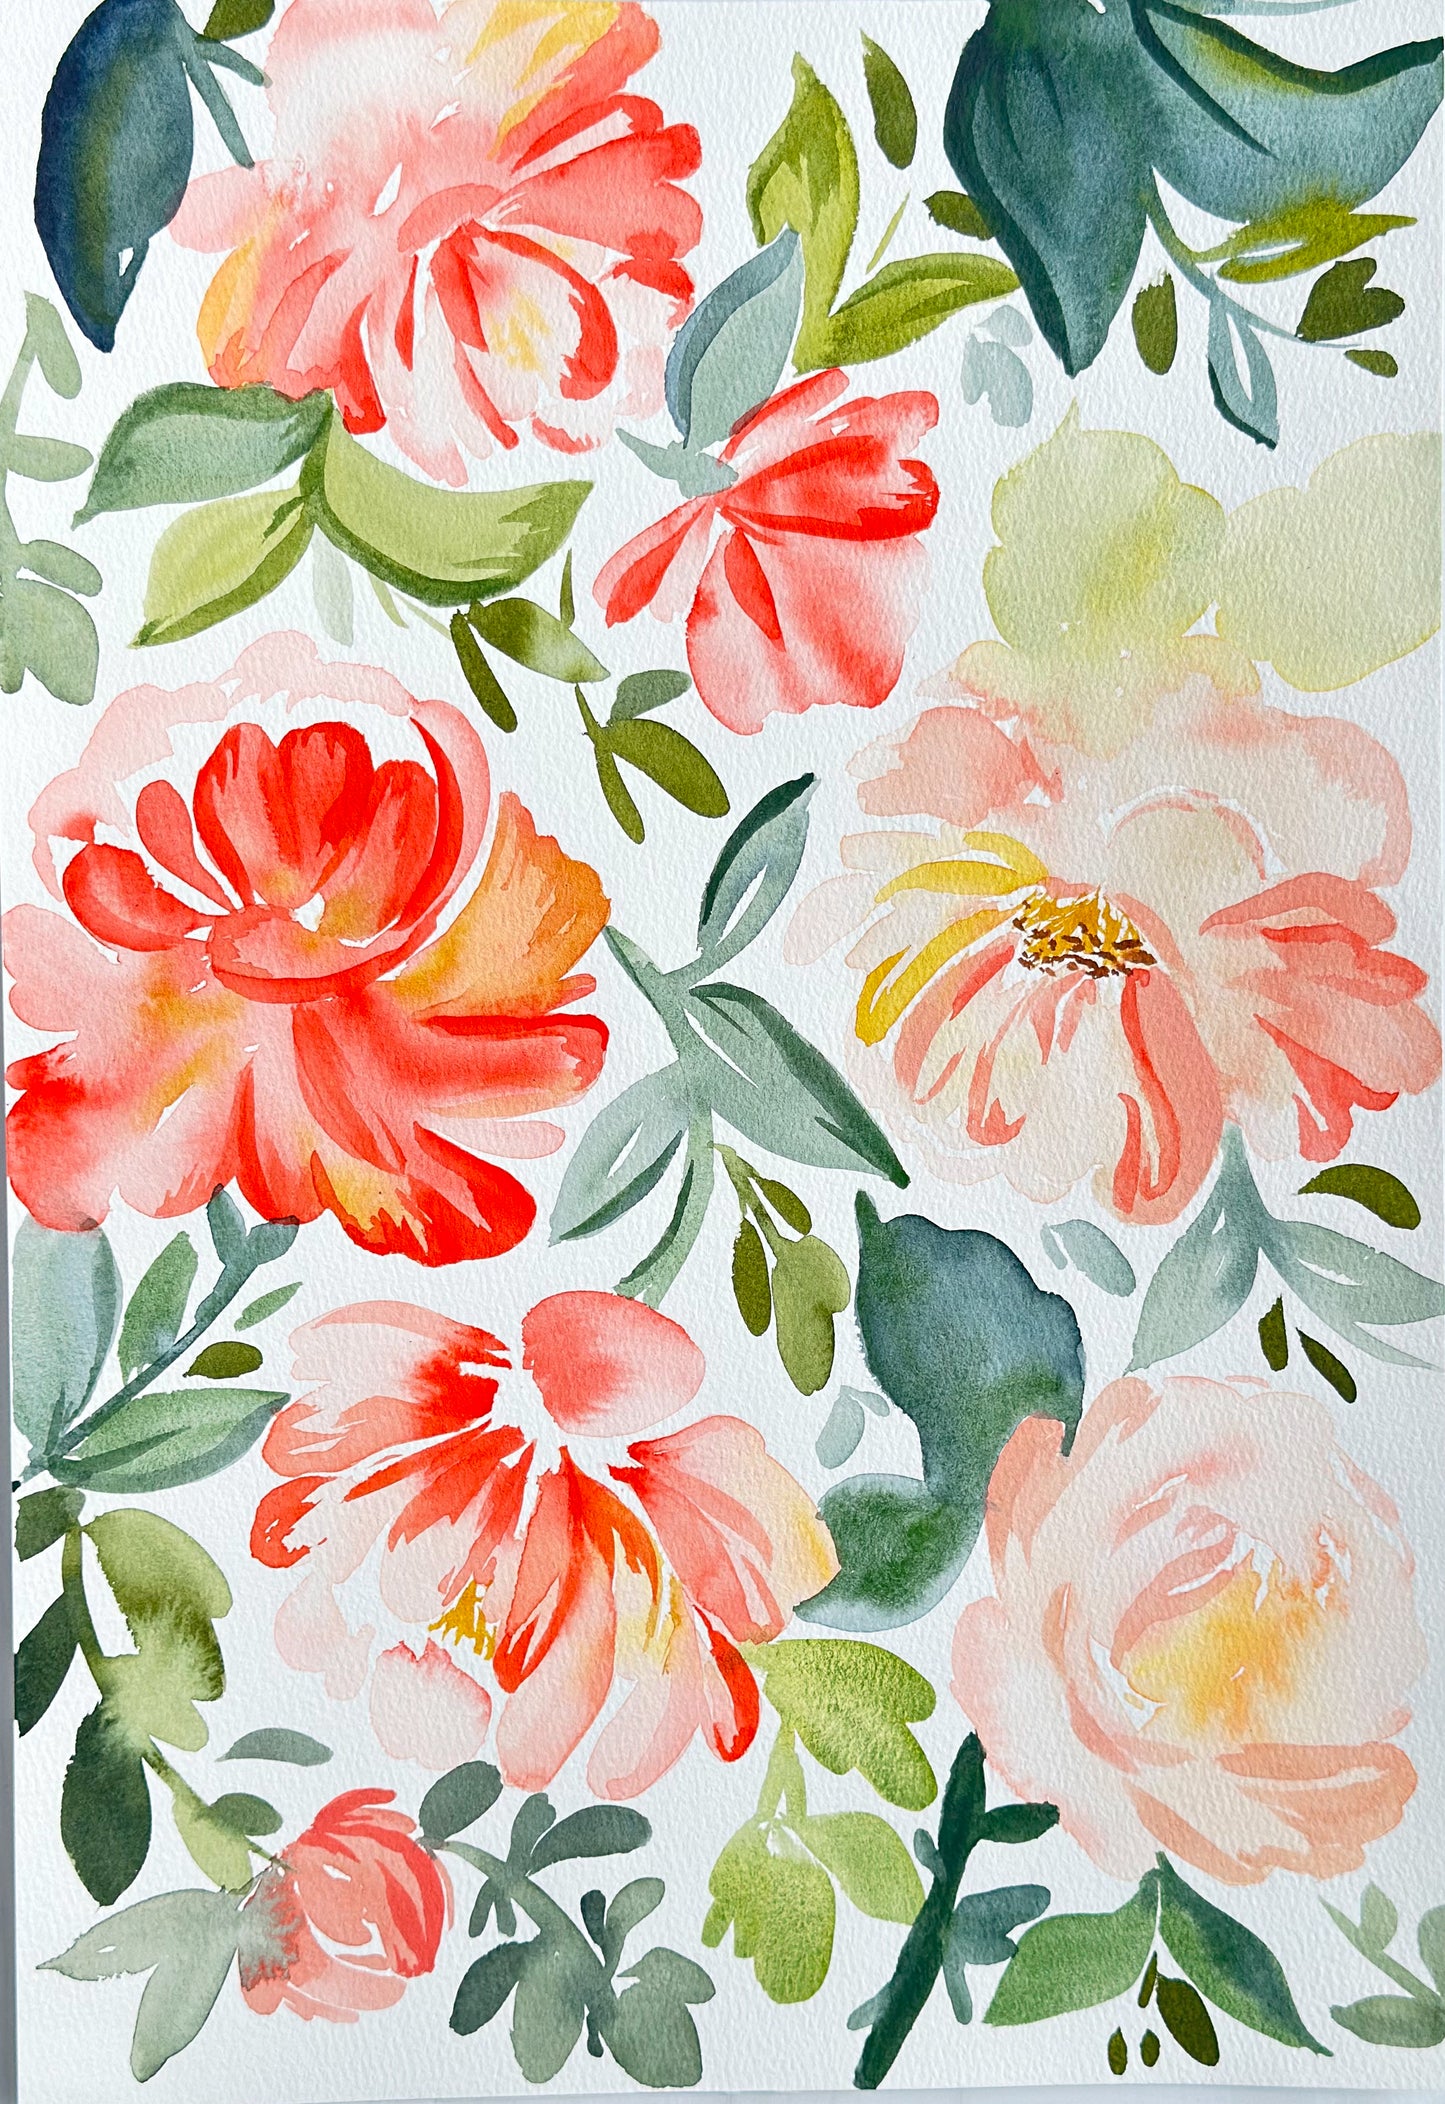 Original Watercolor - Falling Roses